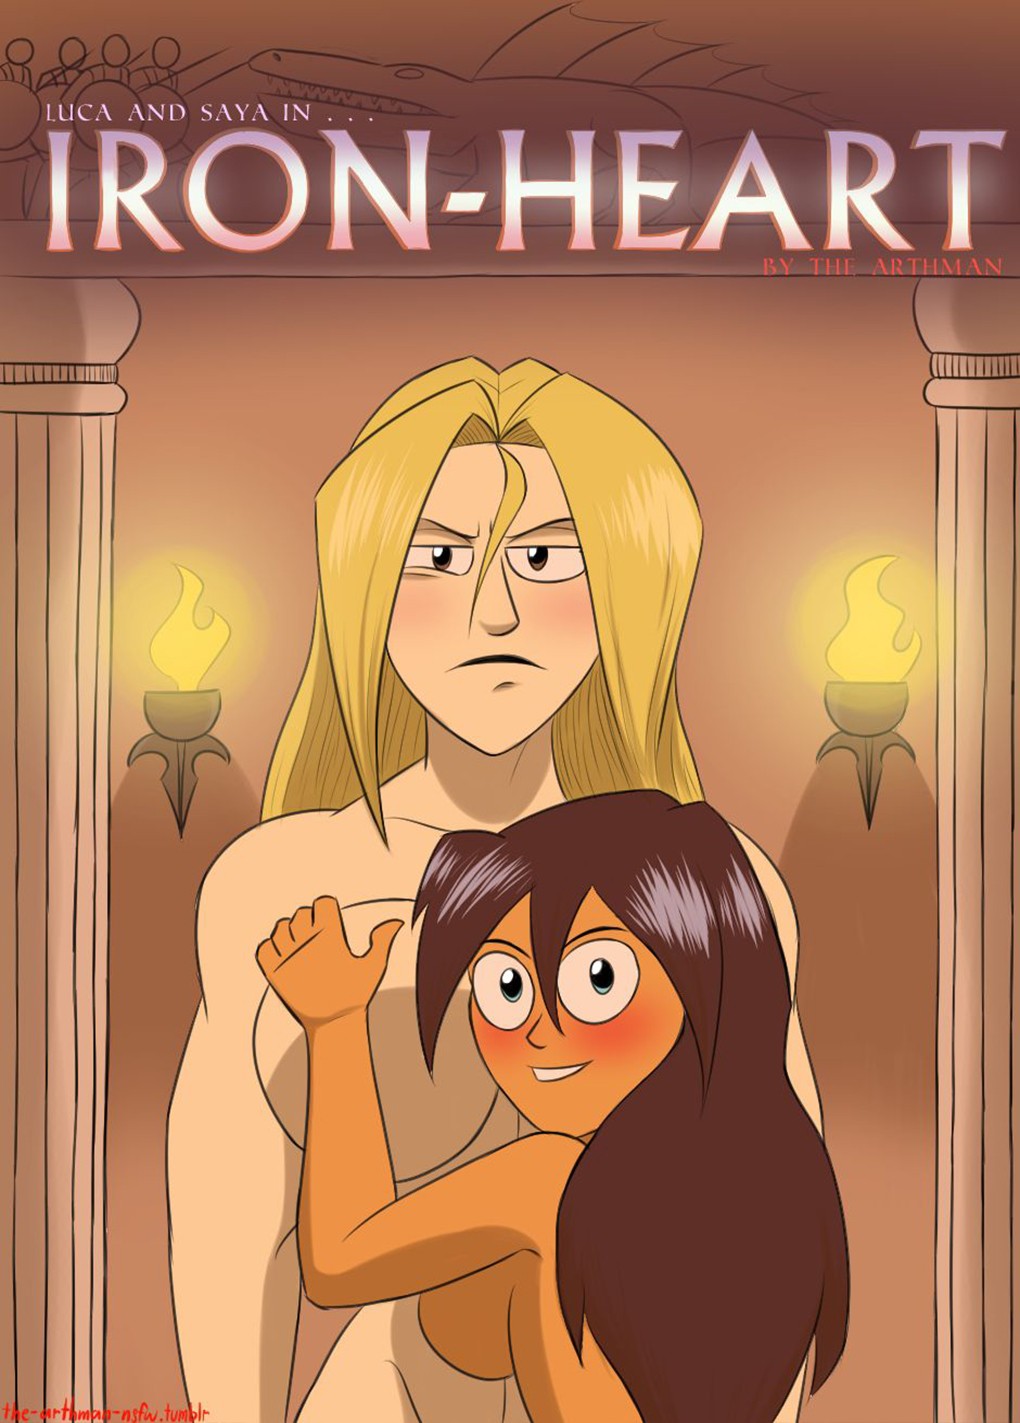 Iron-Heart01.jpg